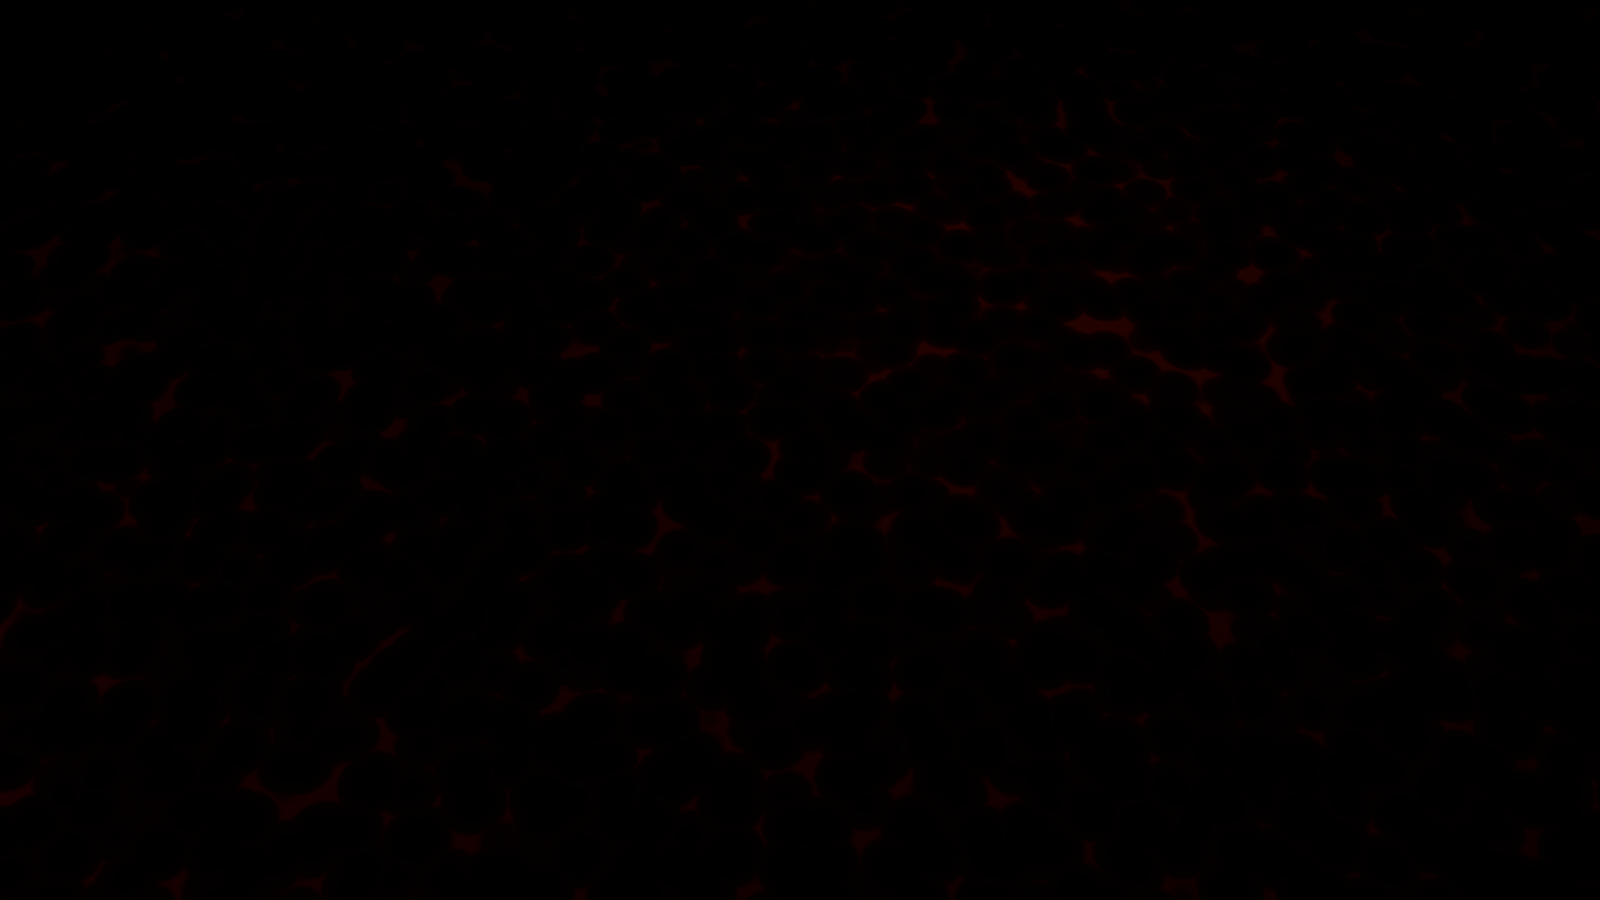 Dark Wallpapers 1080p Wallpaper Cave